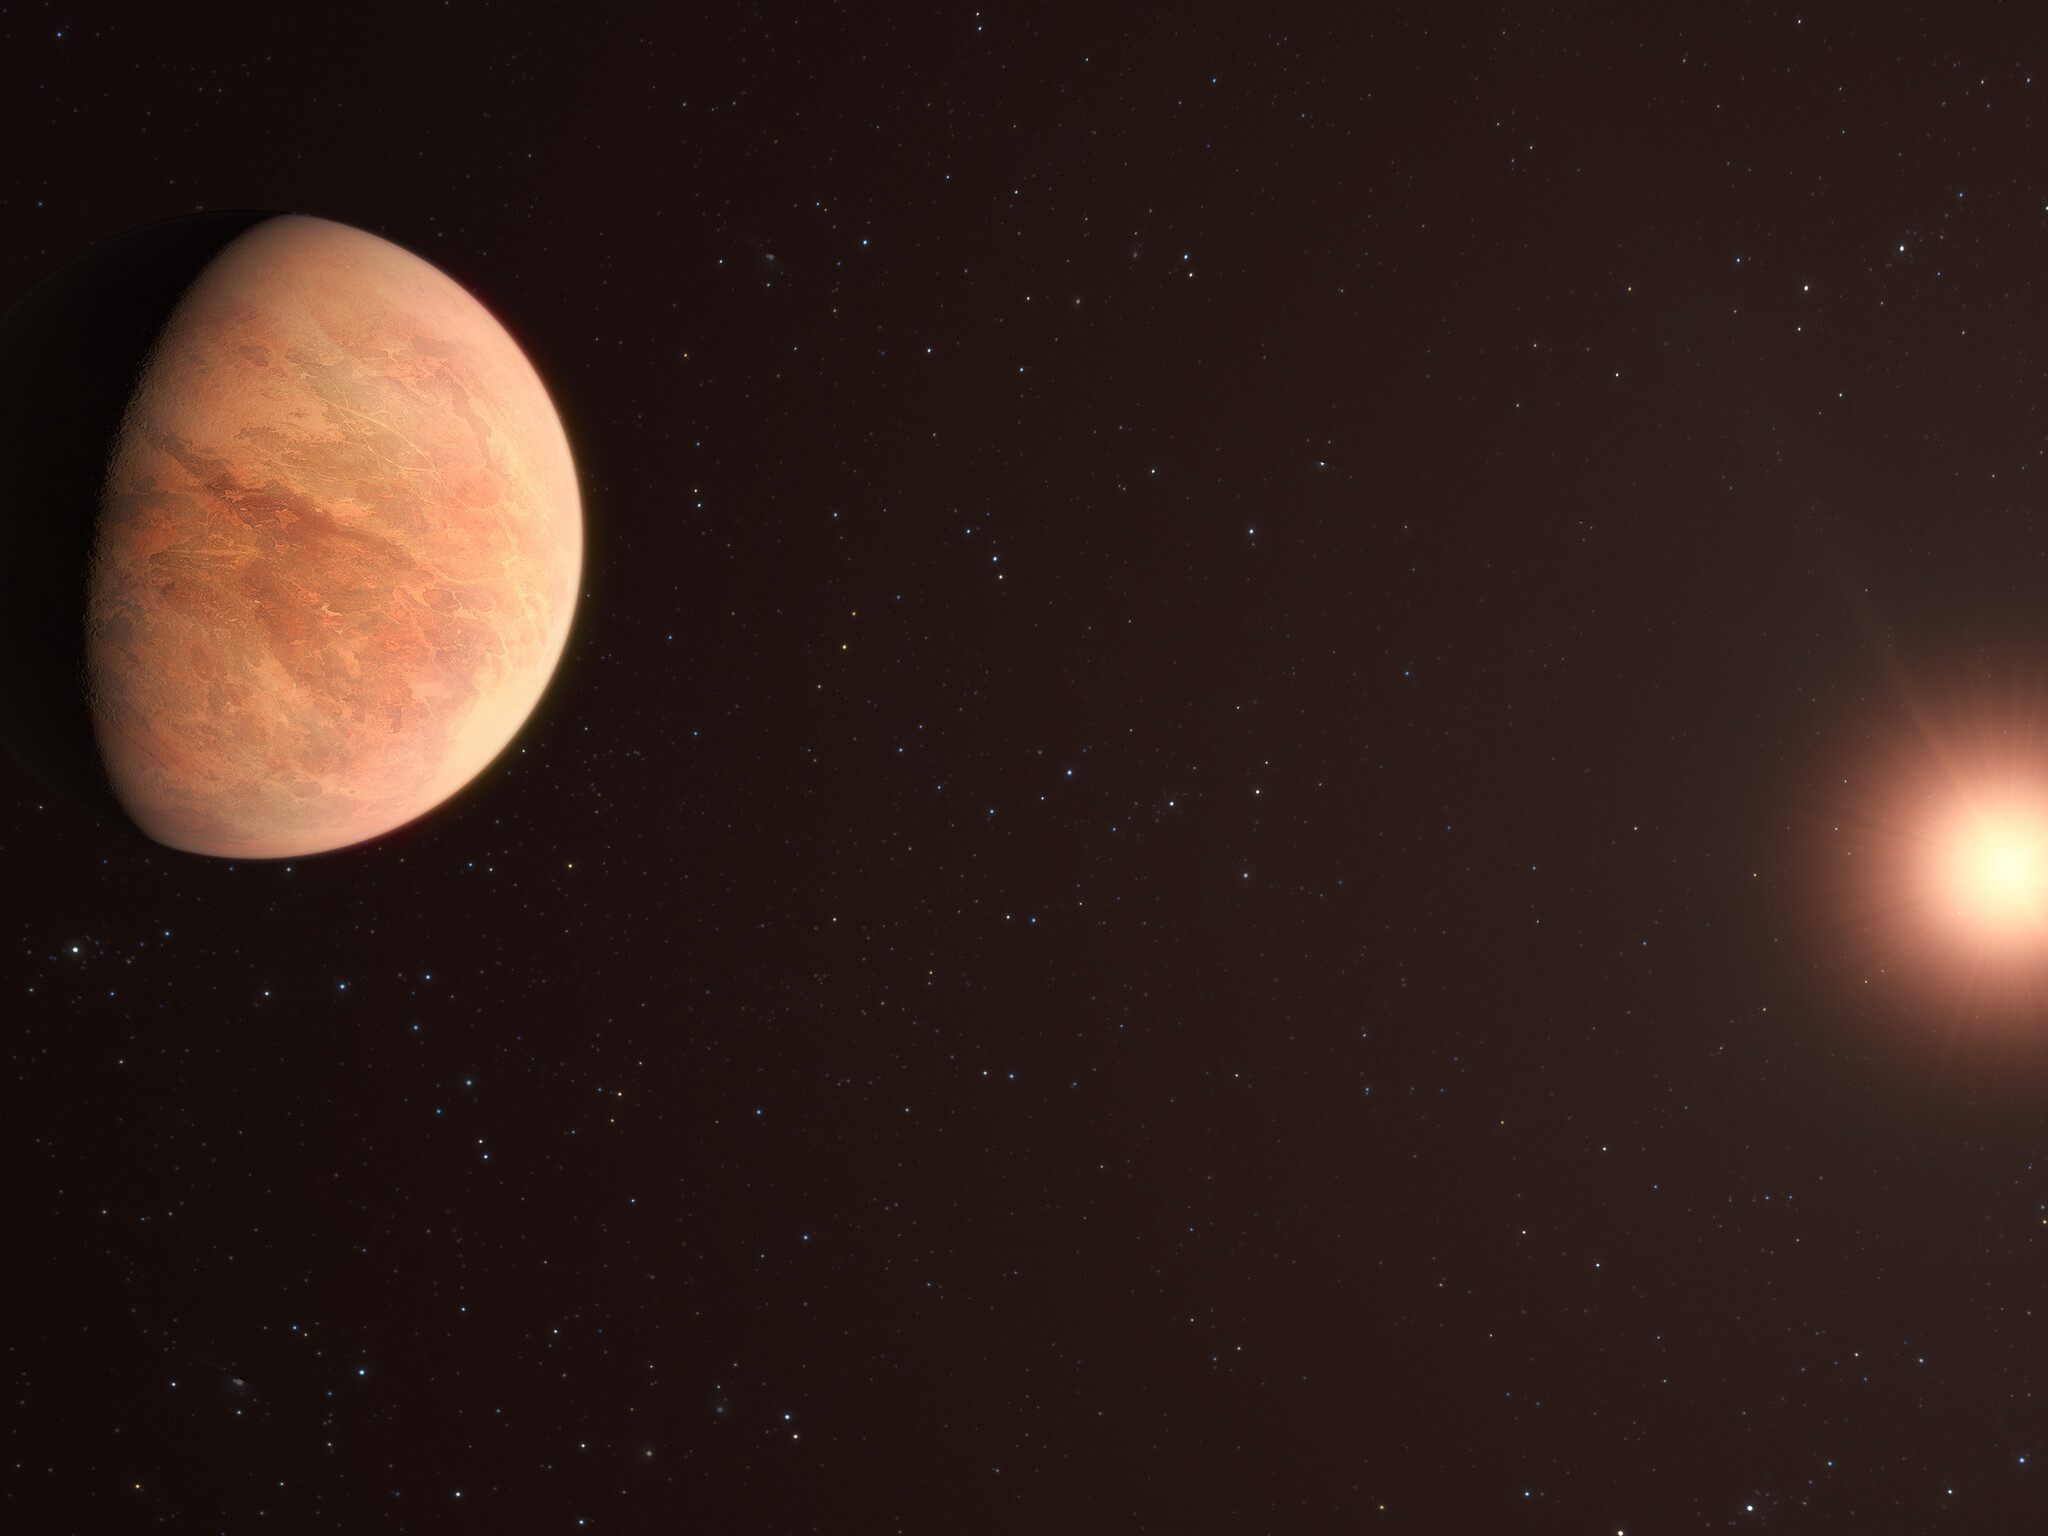 Cette vue d'artiste montre L 98-59b, l'une des planètes du système L 98-59 à 35 années-lumière. Le système contient quatre planètes rocheuses confirmées avec une cinquième potentielle, la plus éloignée de l'étoile, n'étant pas confirmée. En 2021, les astronomes ont utilisé les données de l'instrument Espresso (Echelle SPectrograph for Rocky Exoplanets and Stable Spectroscopic Observations) sur le VLT de l'ESO pour mesurer la masse de L 98-59 b, trouvant qu'elle était la moitié de celle de Vénus. Cela en fait la planète la plus légère mesurée à ce jour en utilisant la technique de la vitesse radiale. © ESO, M. Kornmesser